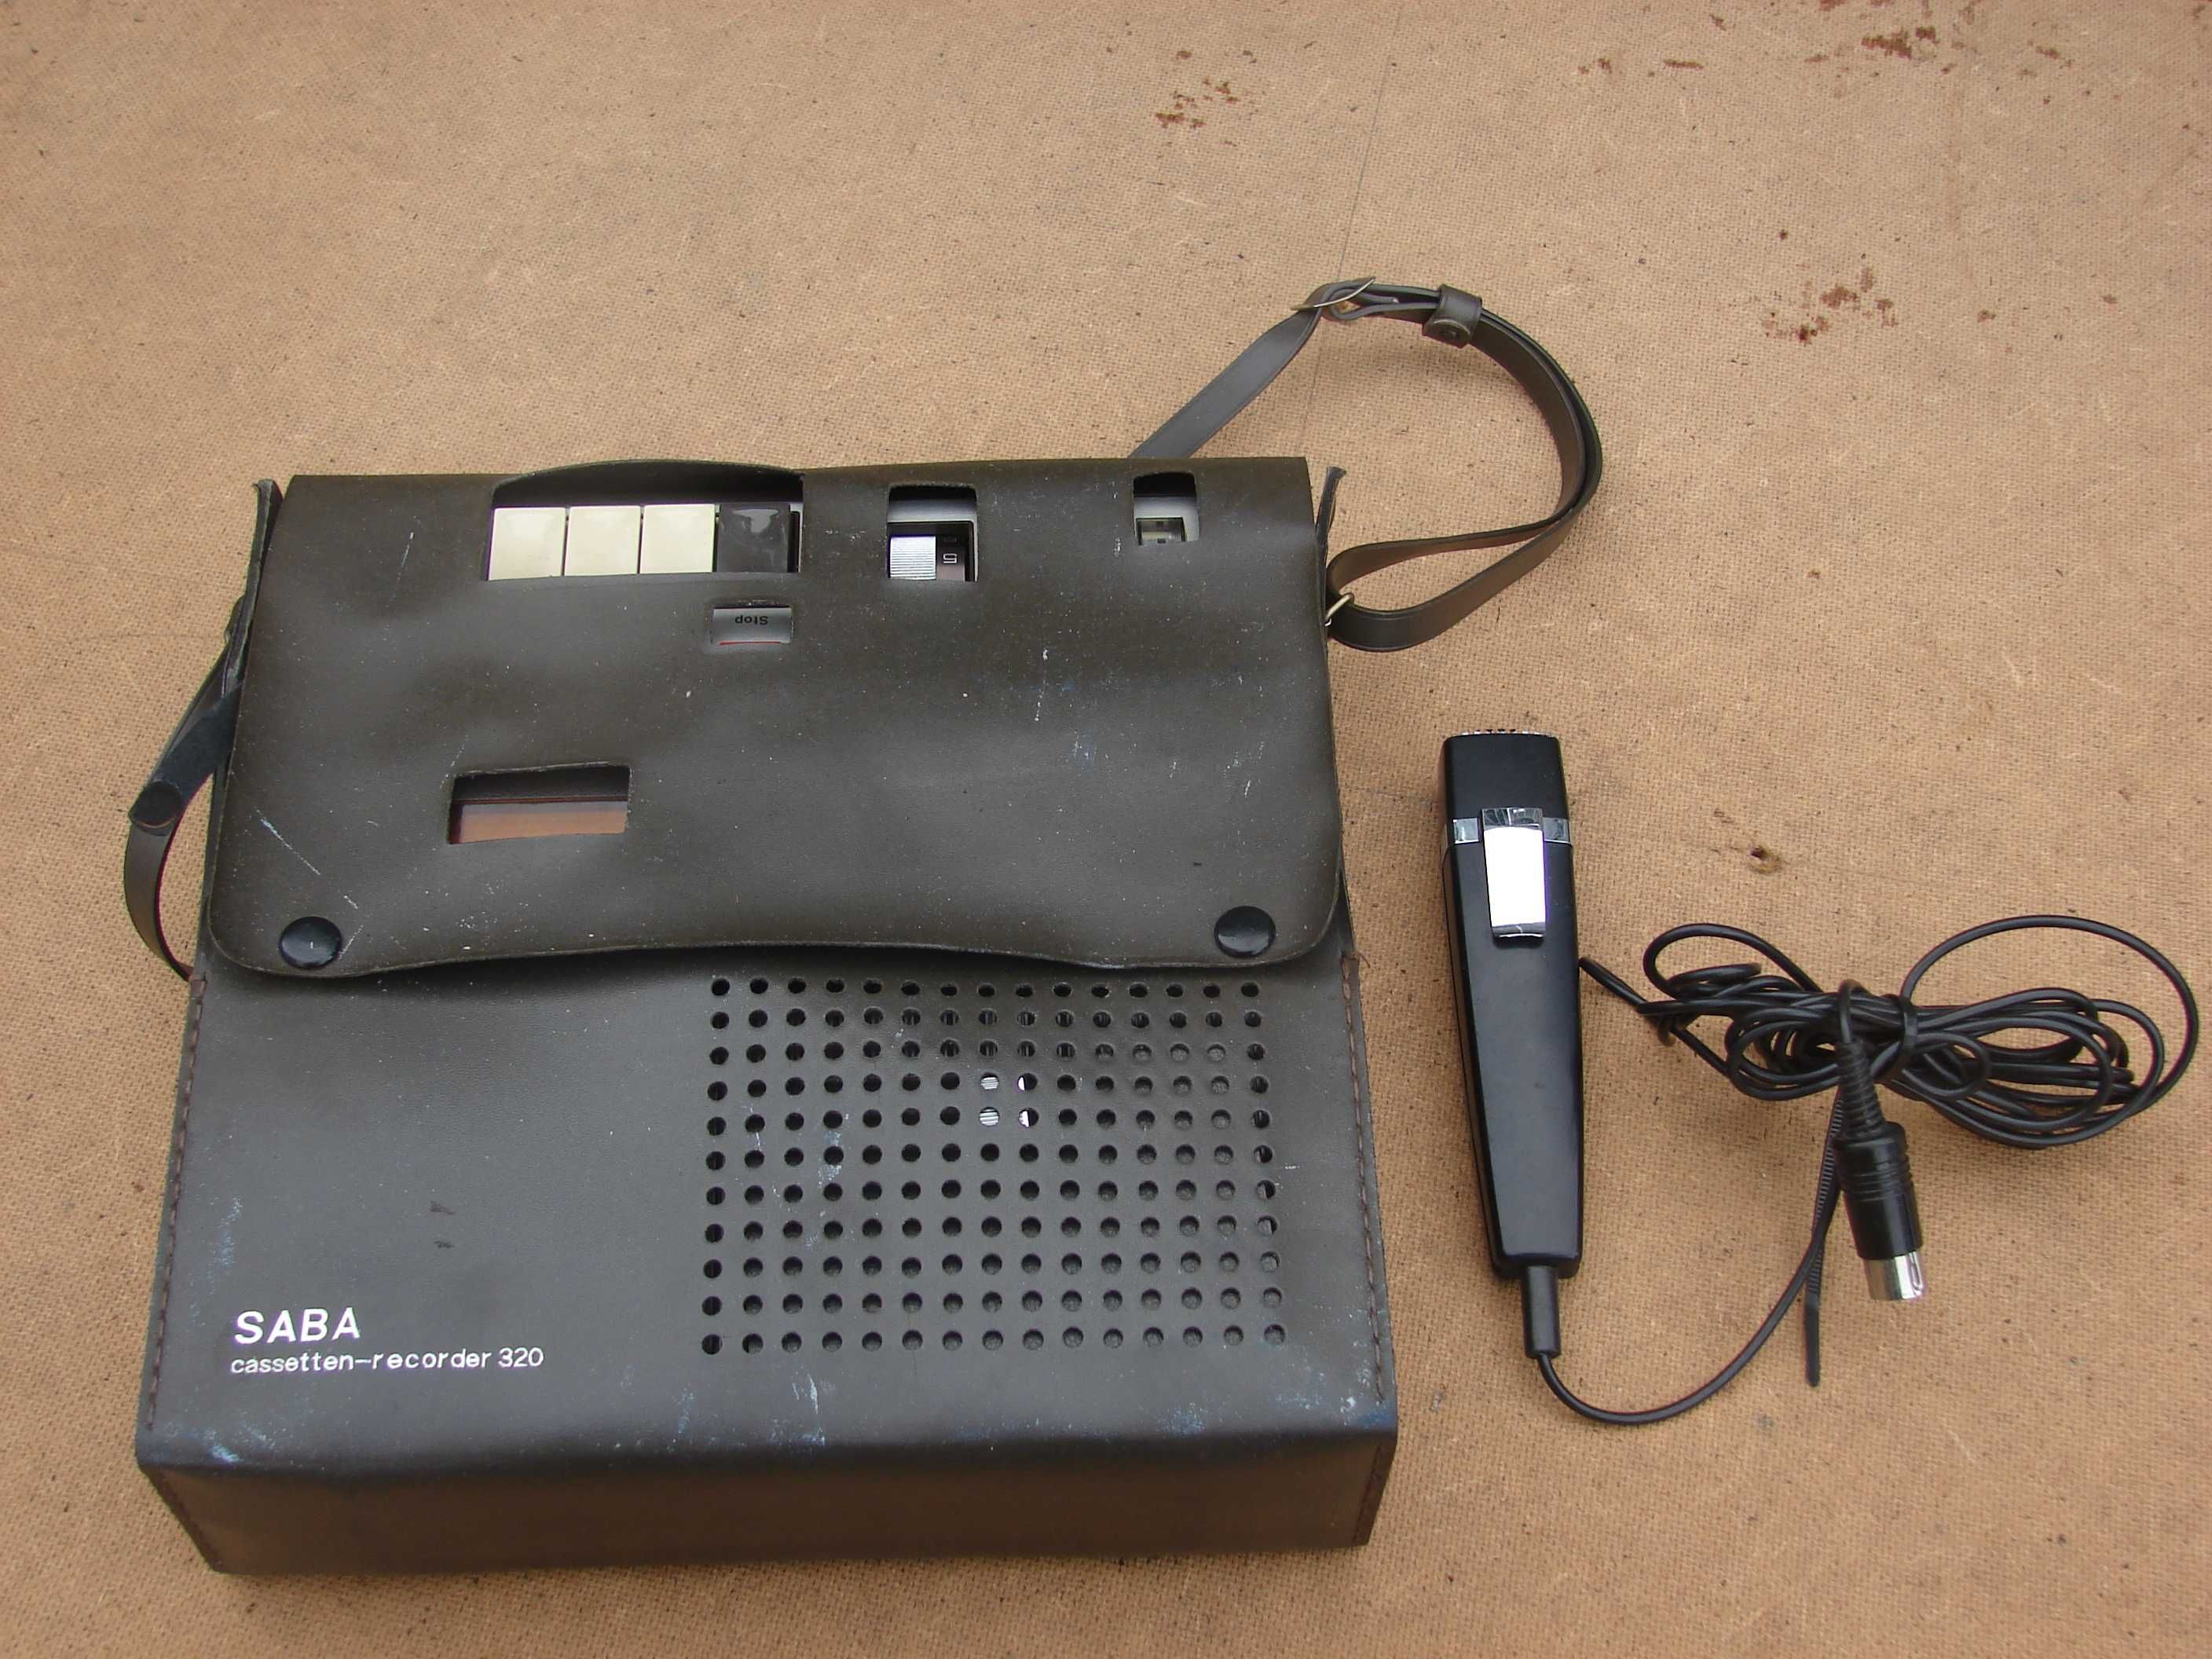 zabytkowy magnetofon kasetowy SABA 320 F cassetten recorder zabytek